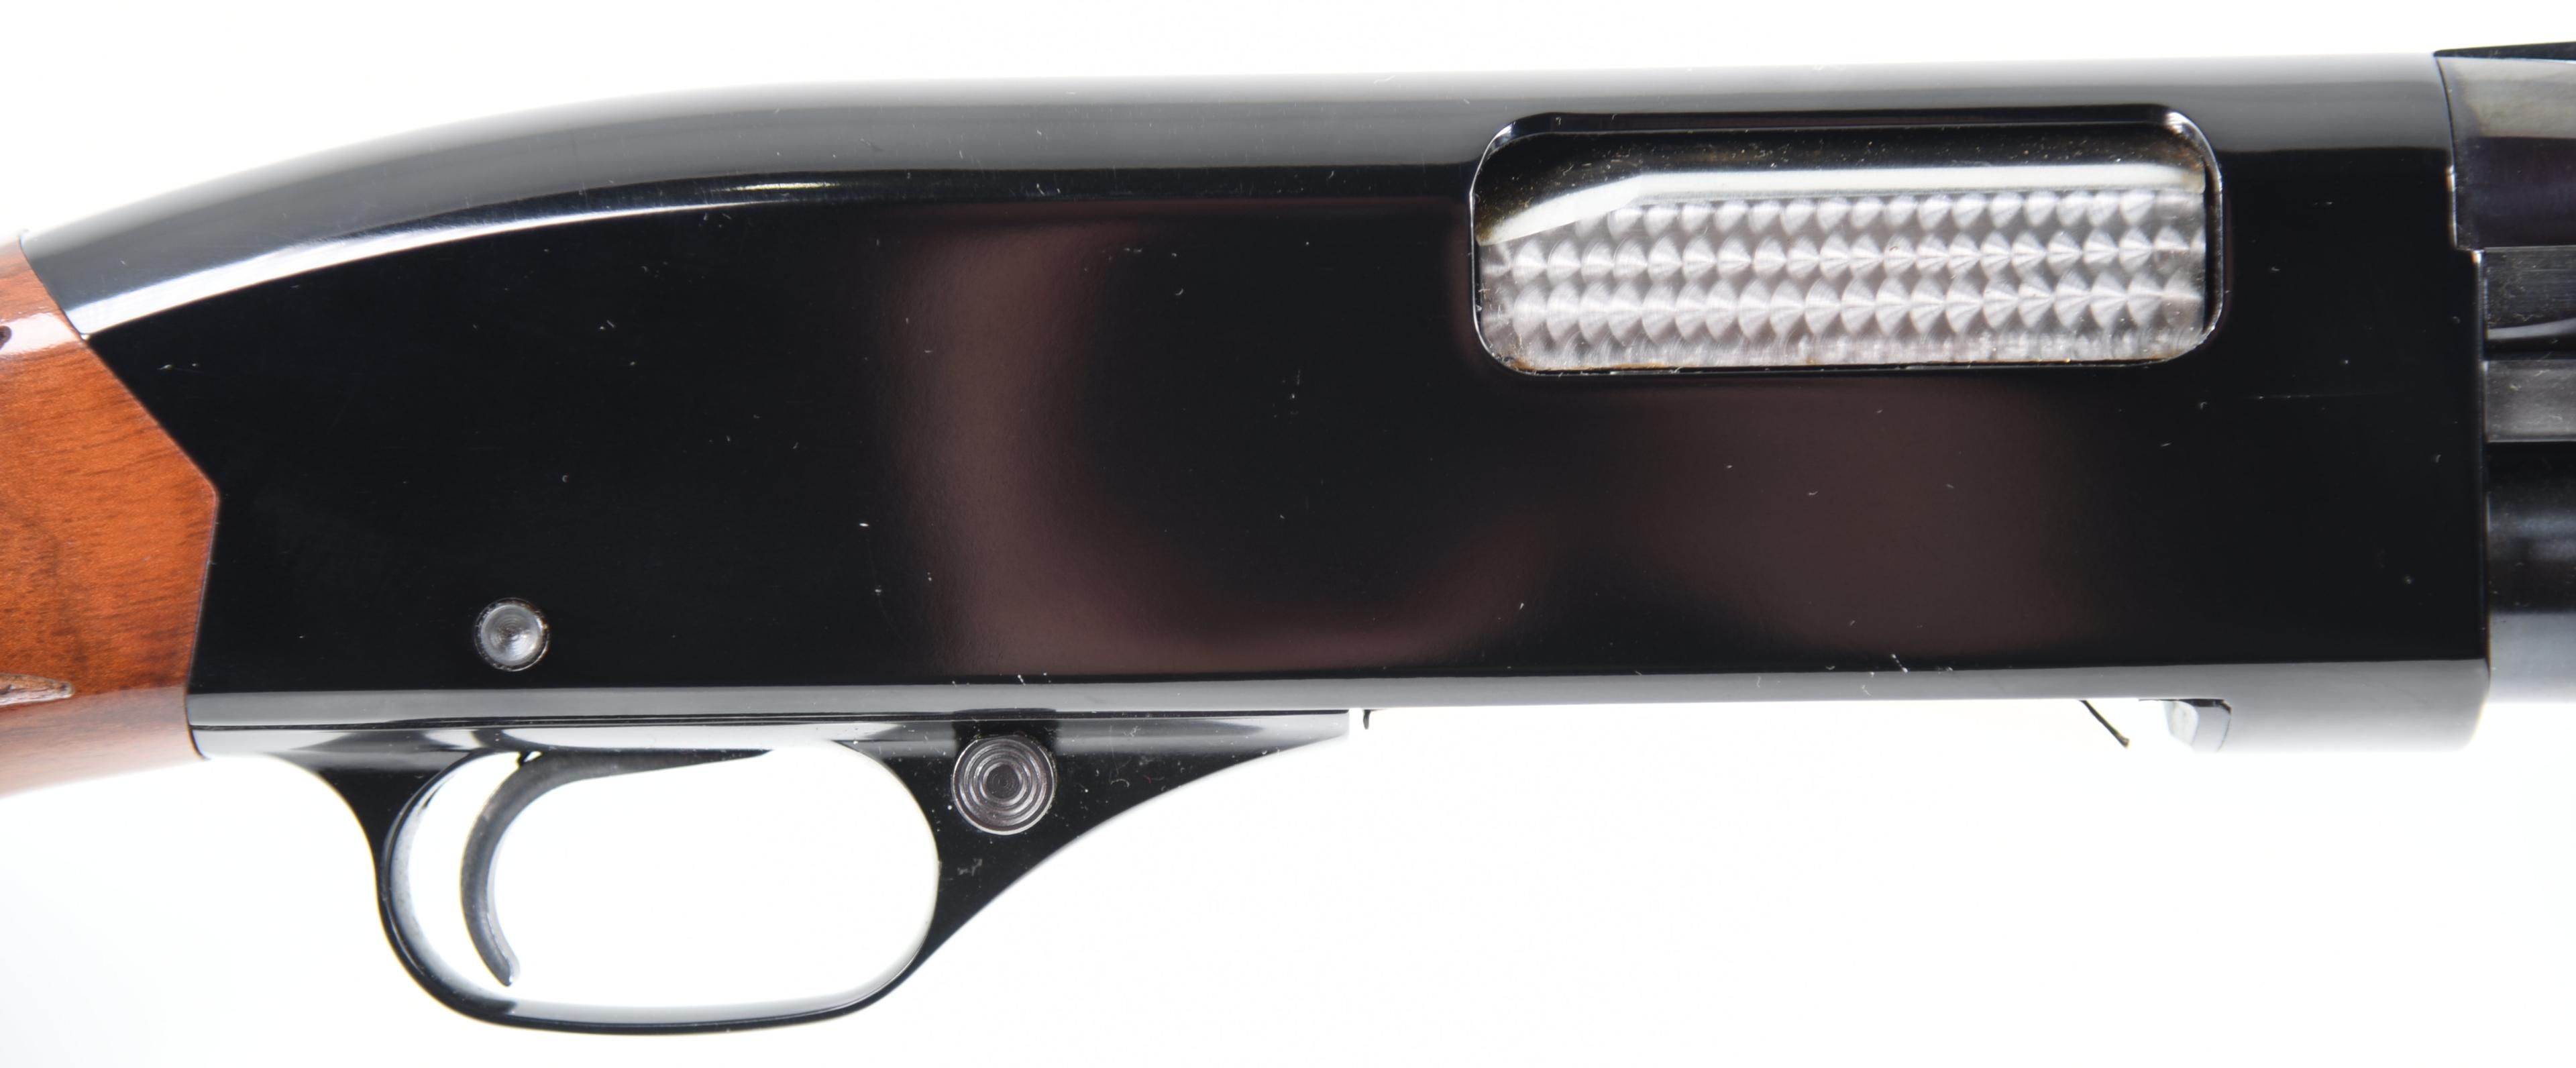 WINCHESTR 1300 XTR Pump Action Shotgun 12 GA